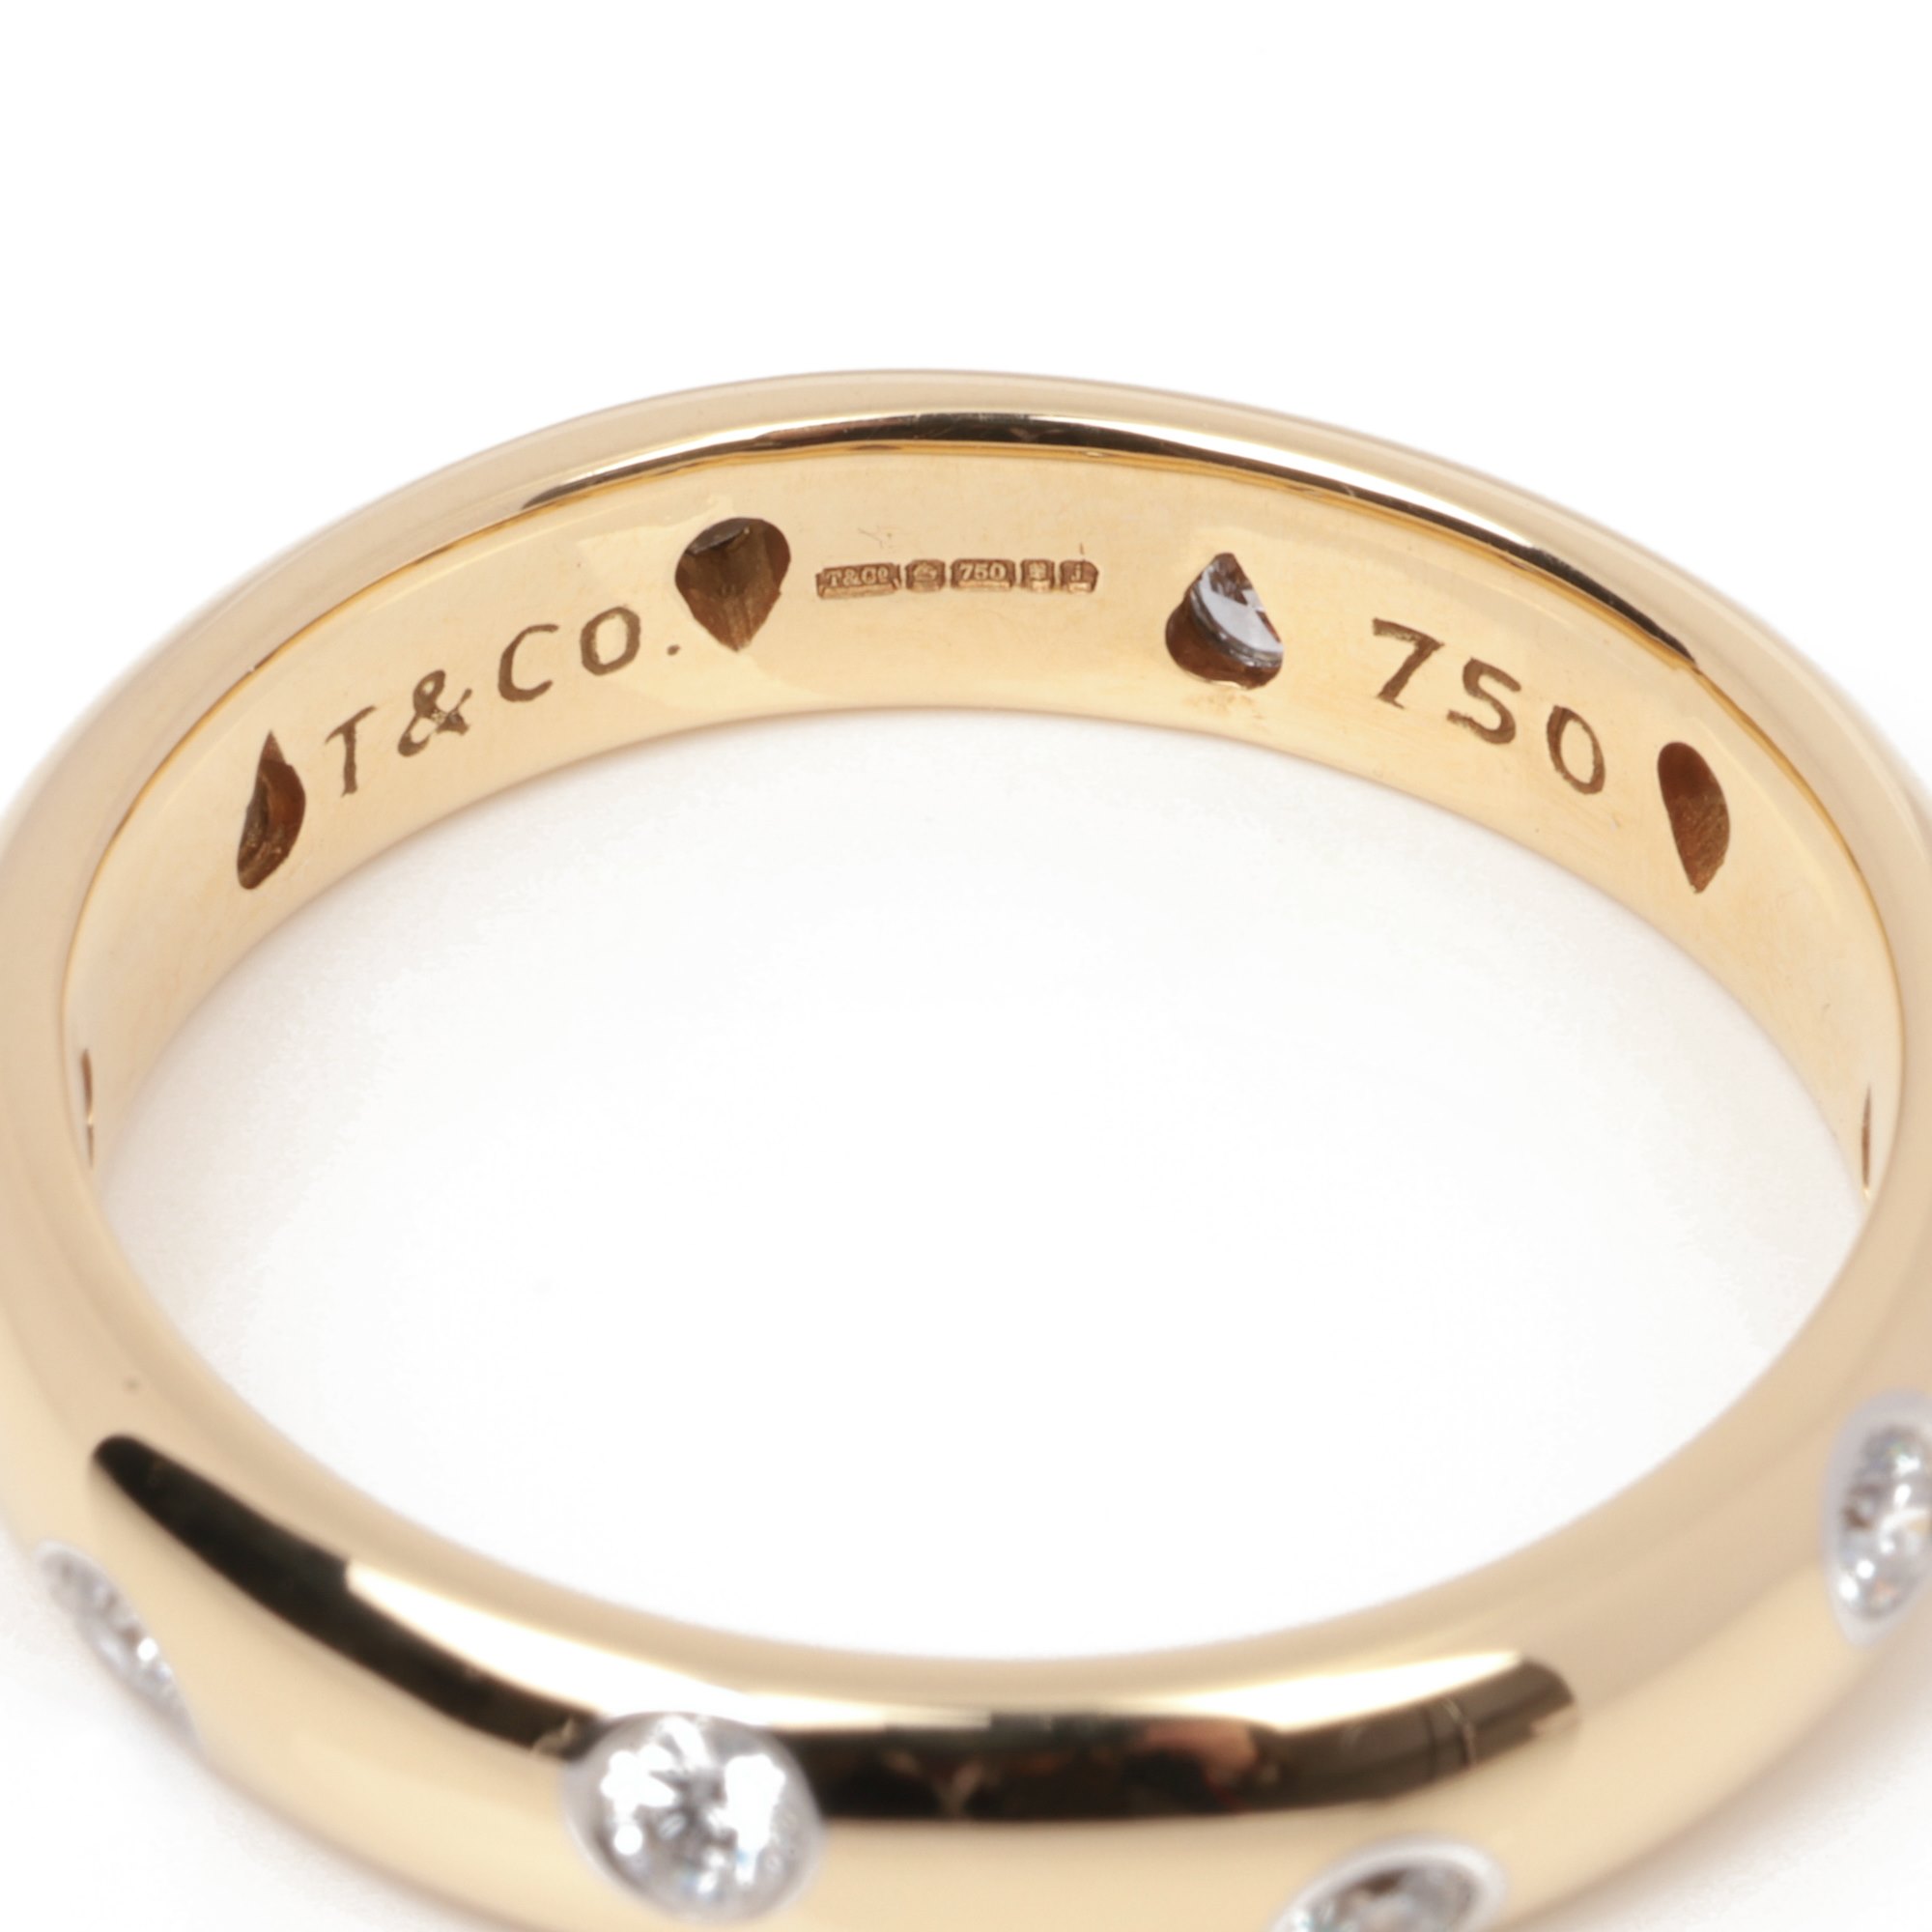 Tiffany & Co. Etoile Band Ring